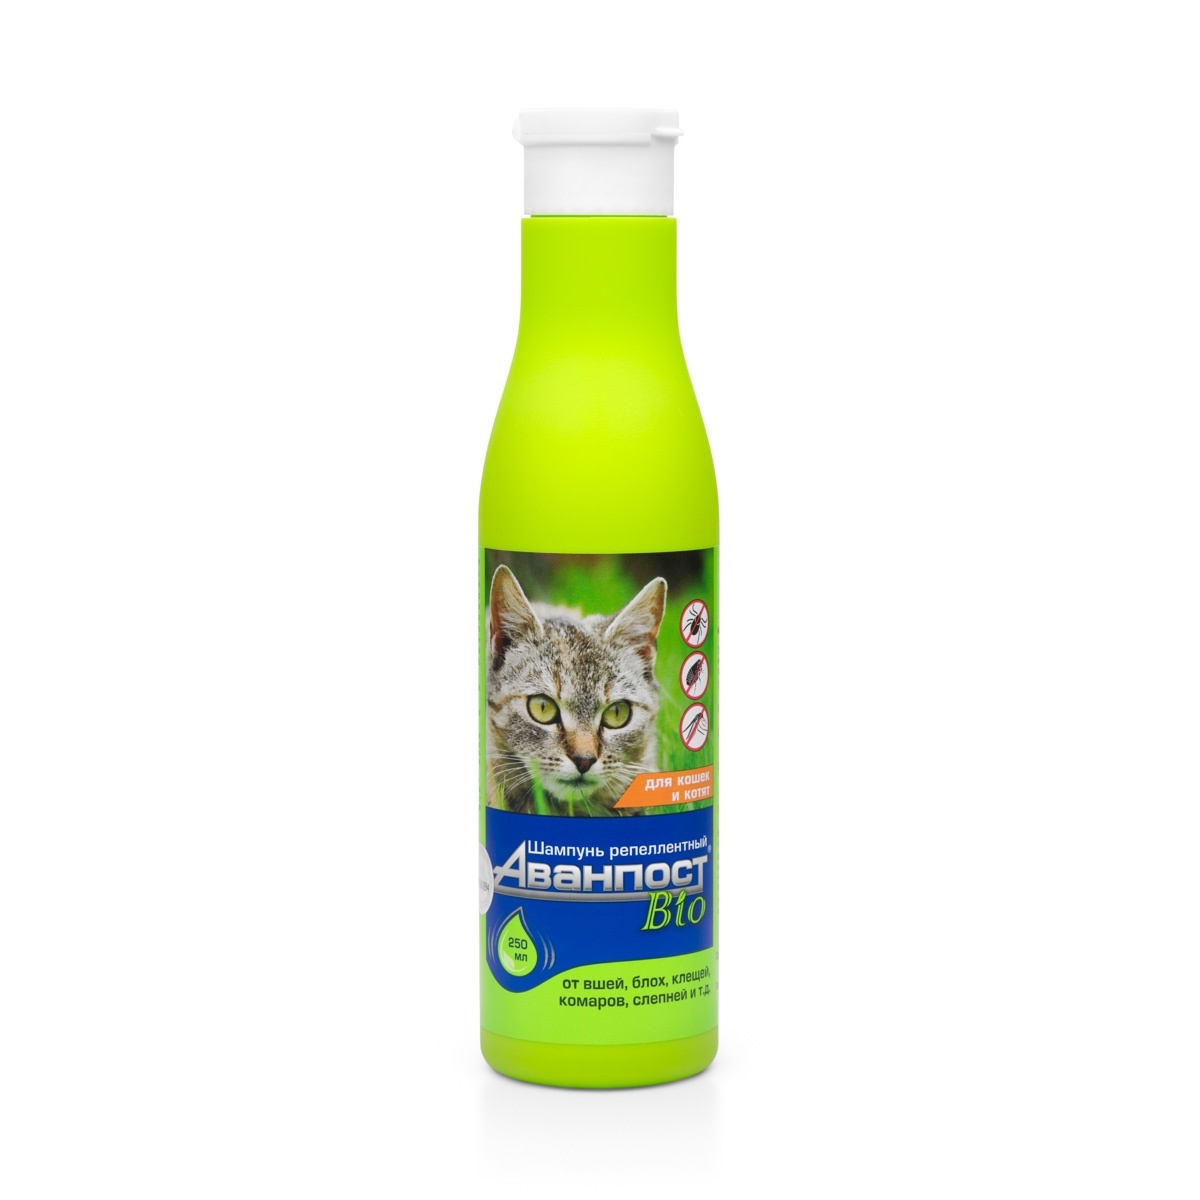 цена Веда Веда Аванпост BIO шампунь репеллентный для кошек (250 г)